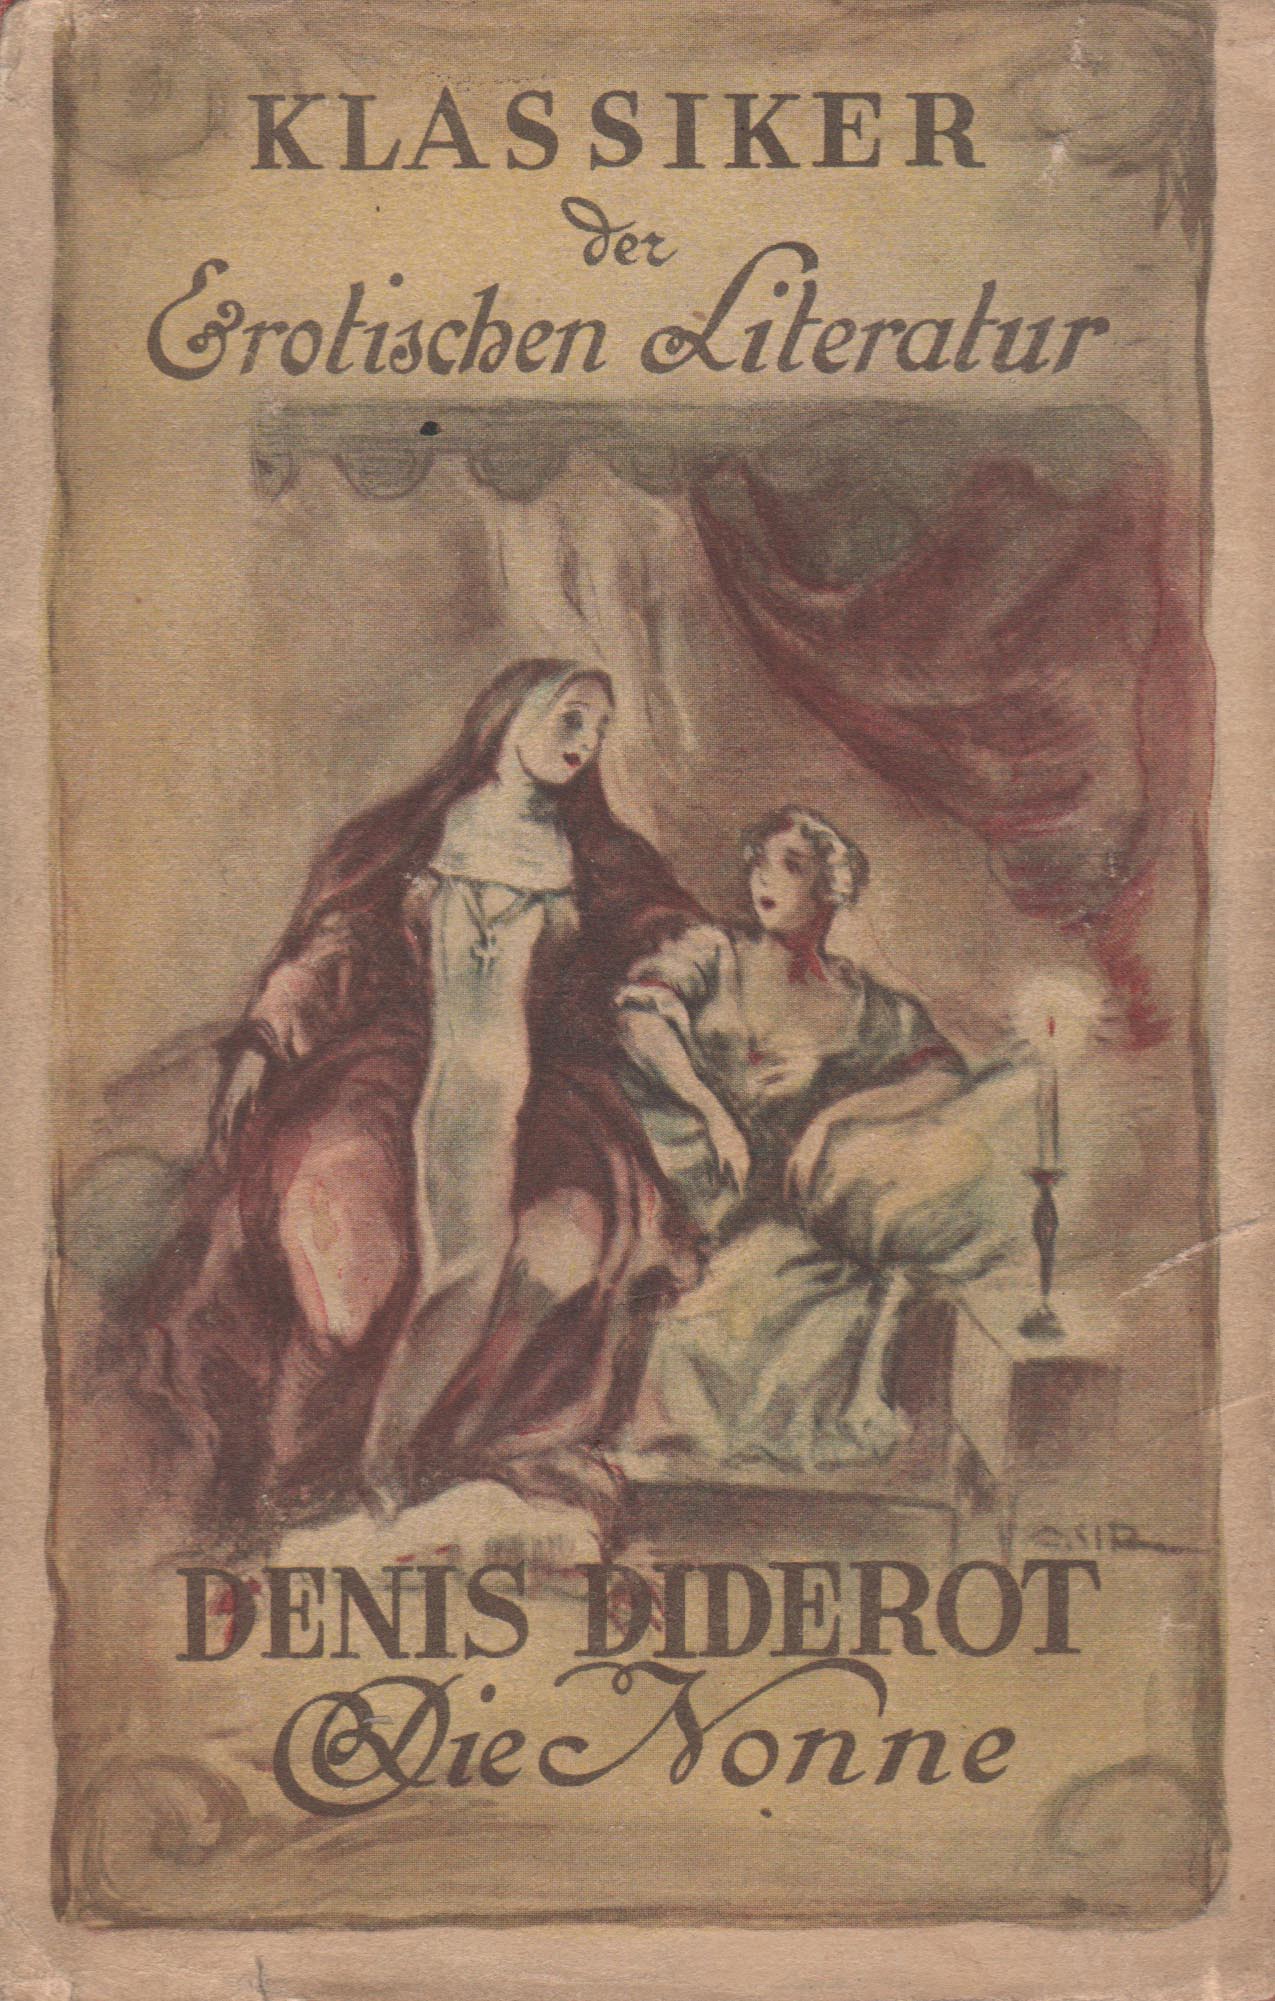 Die Nonne (Denis Diderot)